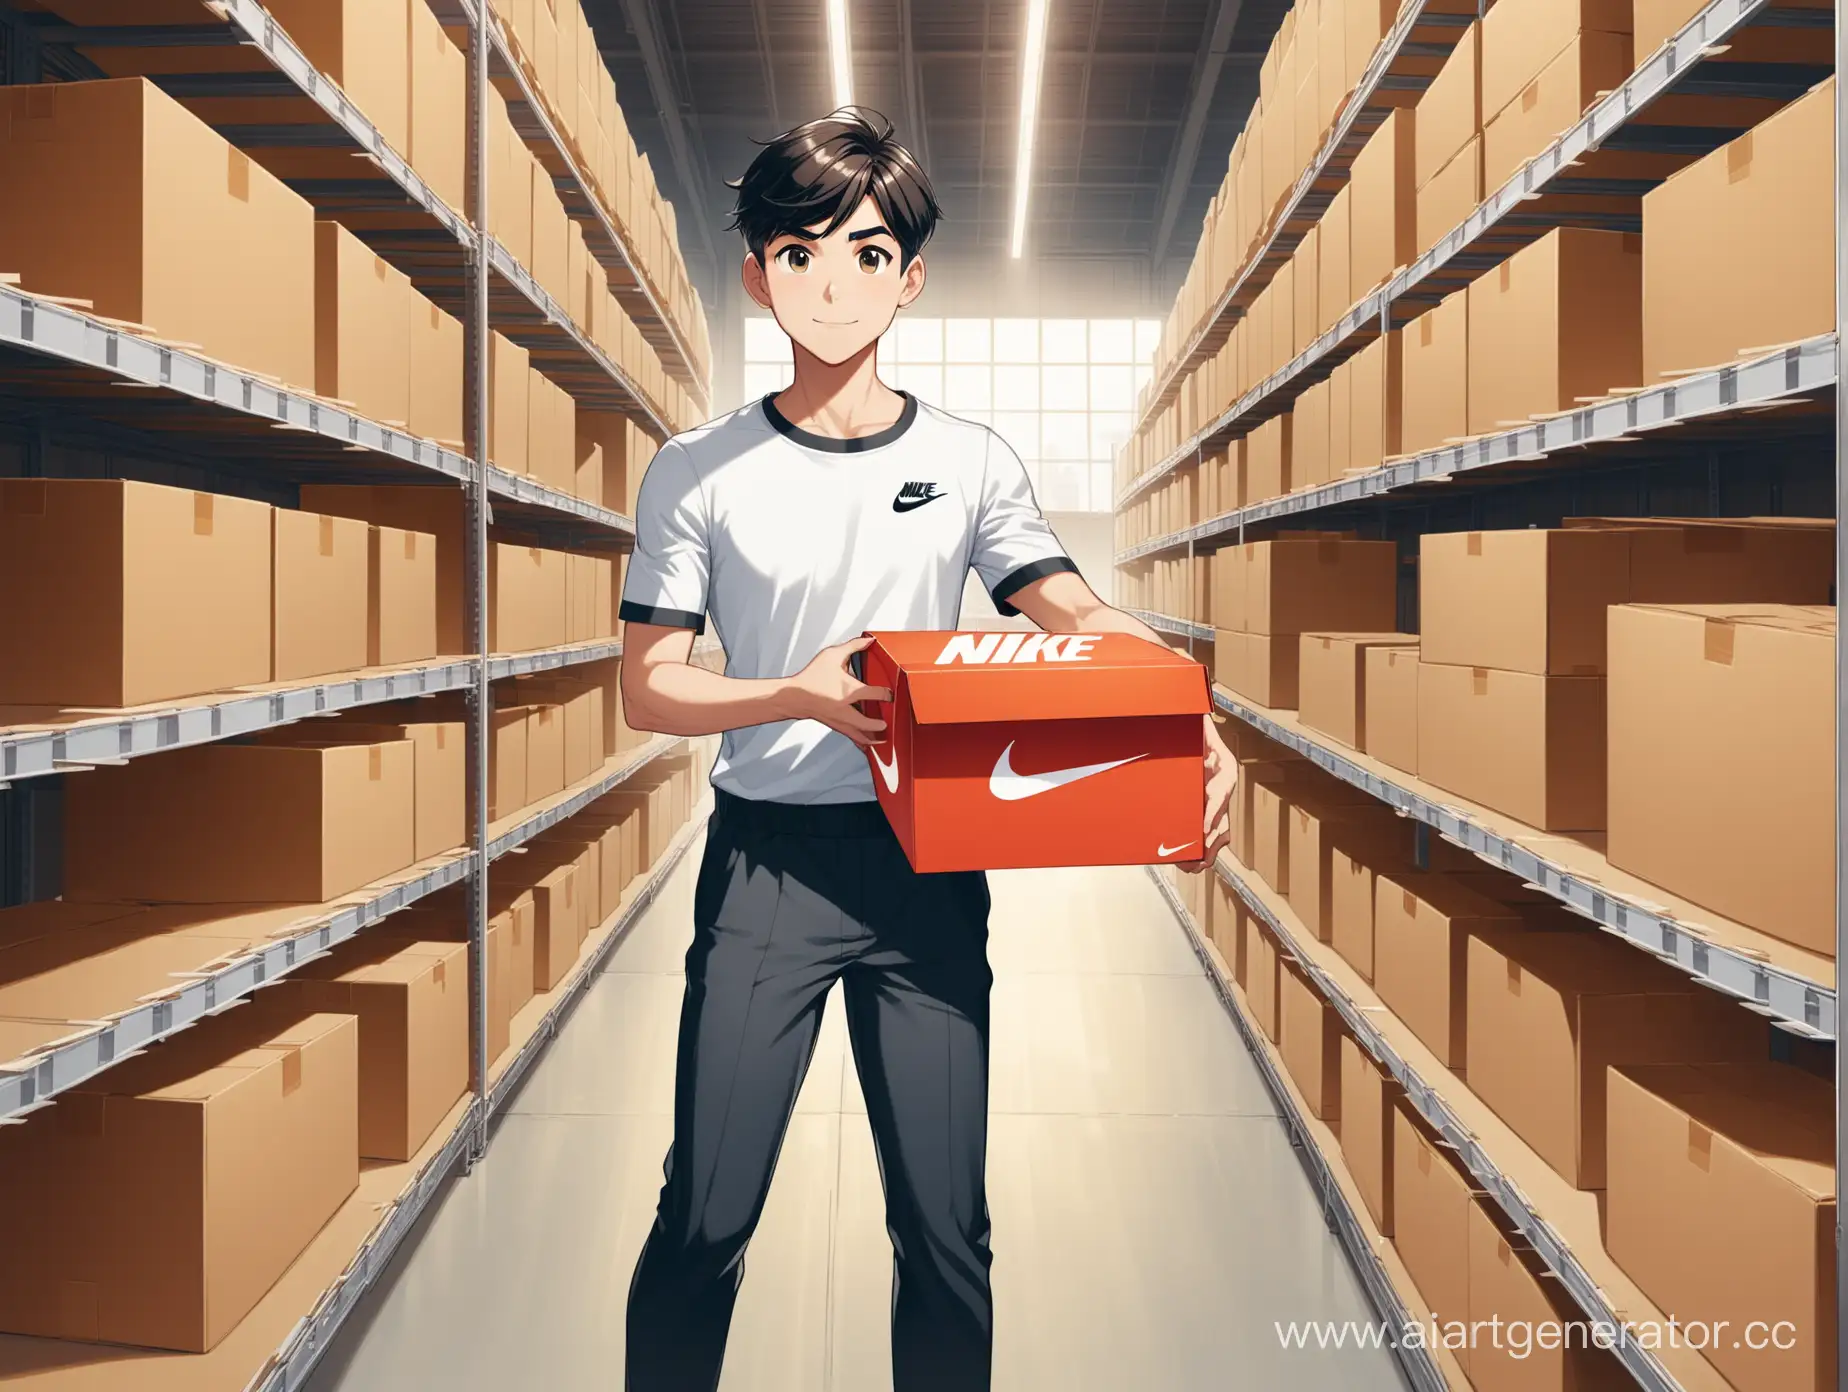 ухоженный мультяшный мальчик держит в руках коробку с кроссовками  nike среди полок с коробками (на складе)